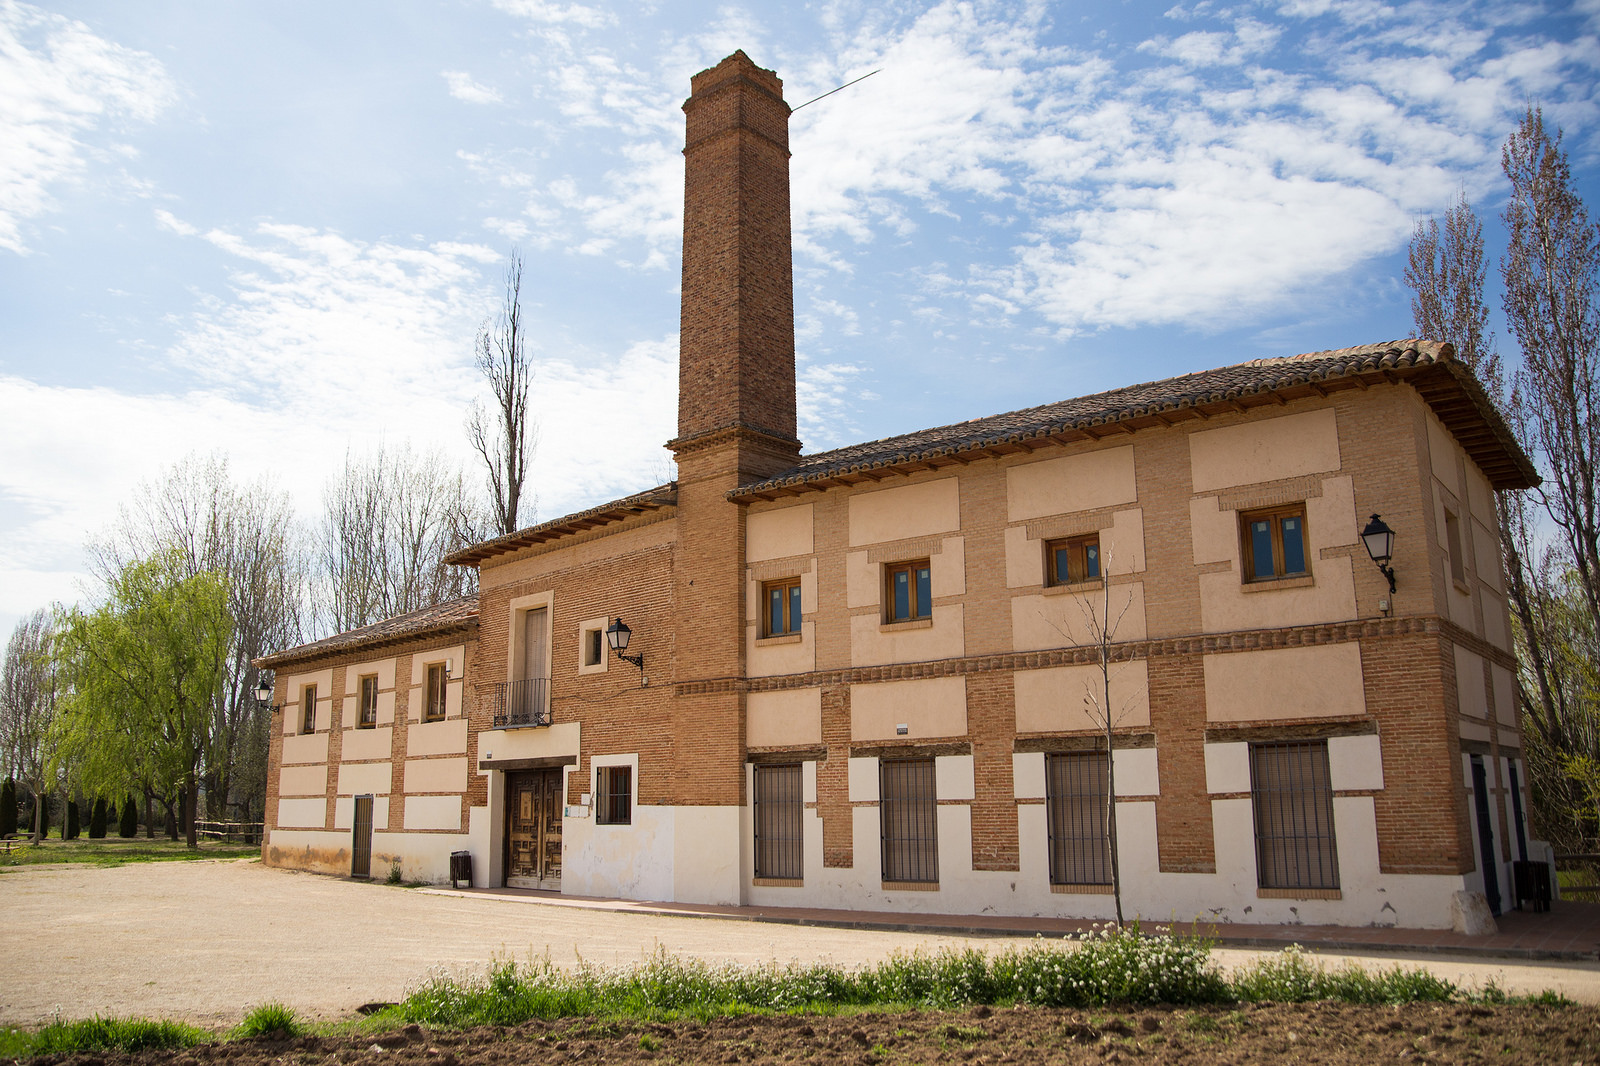 Museo de la molineria